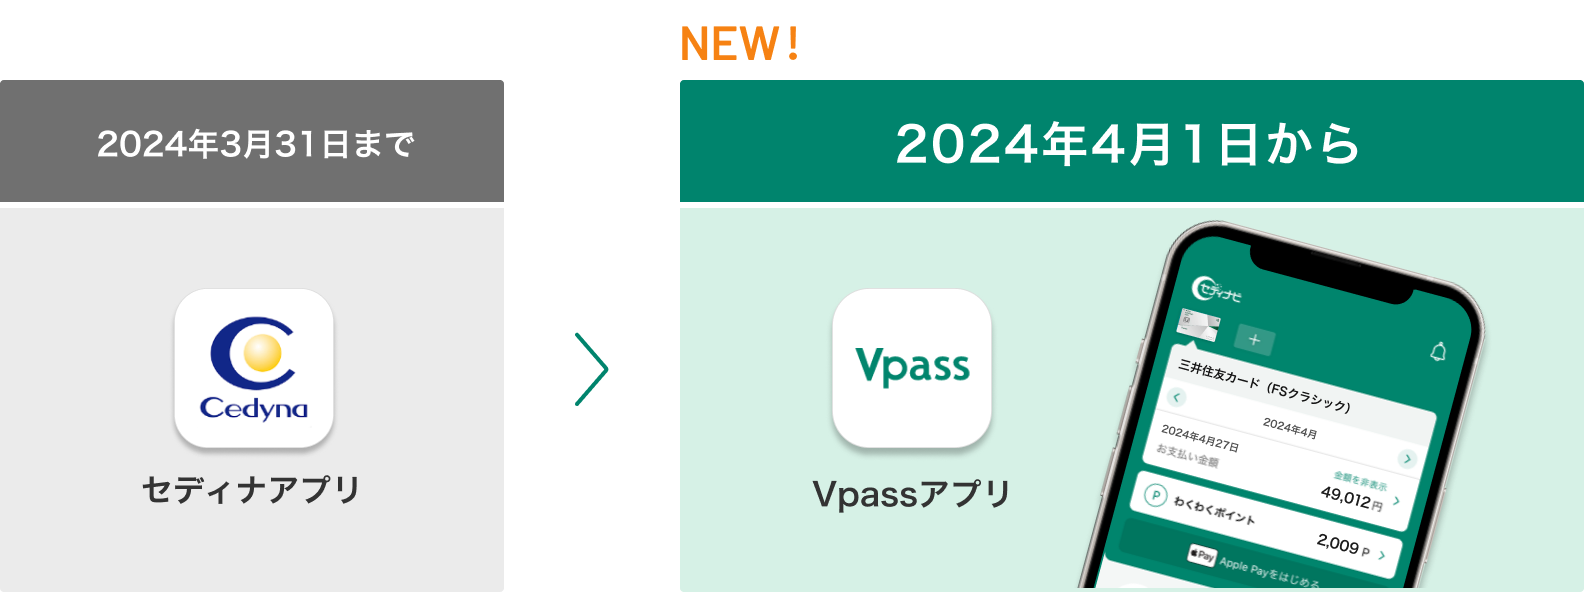 2024年3月31日までセディナアプリ 2024年4月1日からVpassアプリ